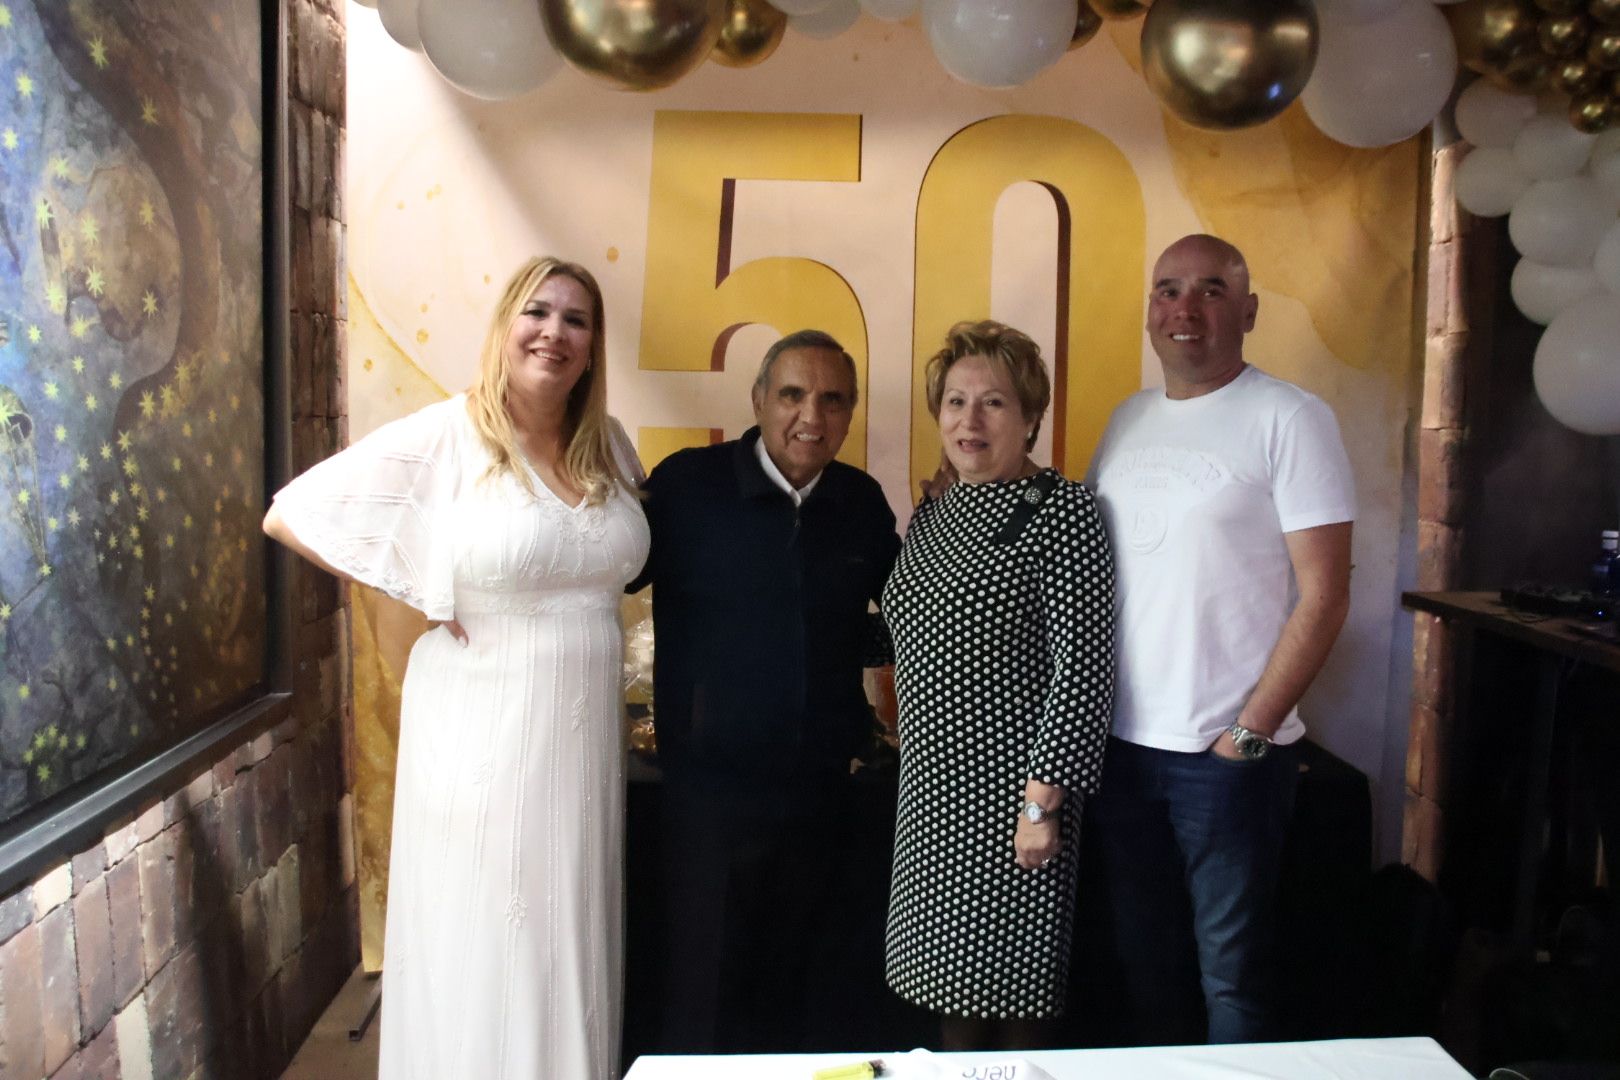 GALERÍA | Celebración del 50 cumpleaños de Montse Hidalgo, hija de Antonio Hidalgo, en Salamanca. Fotos SALAMANCA24HORAS